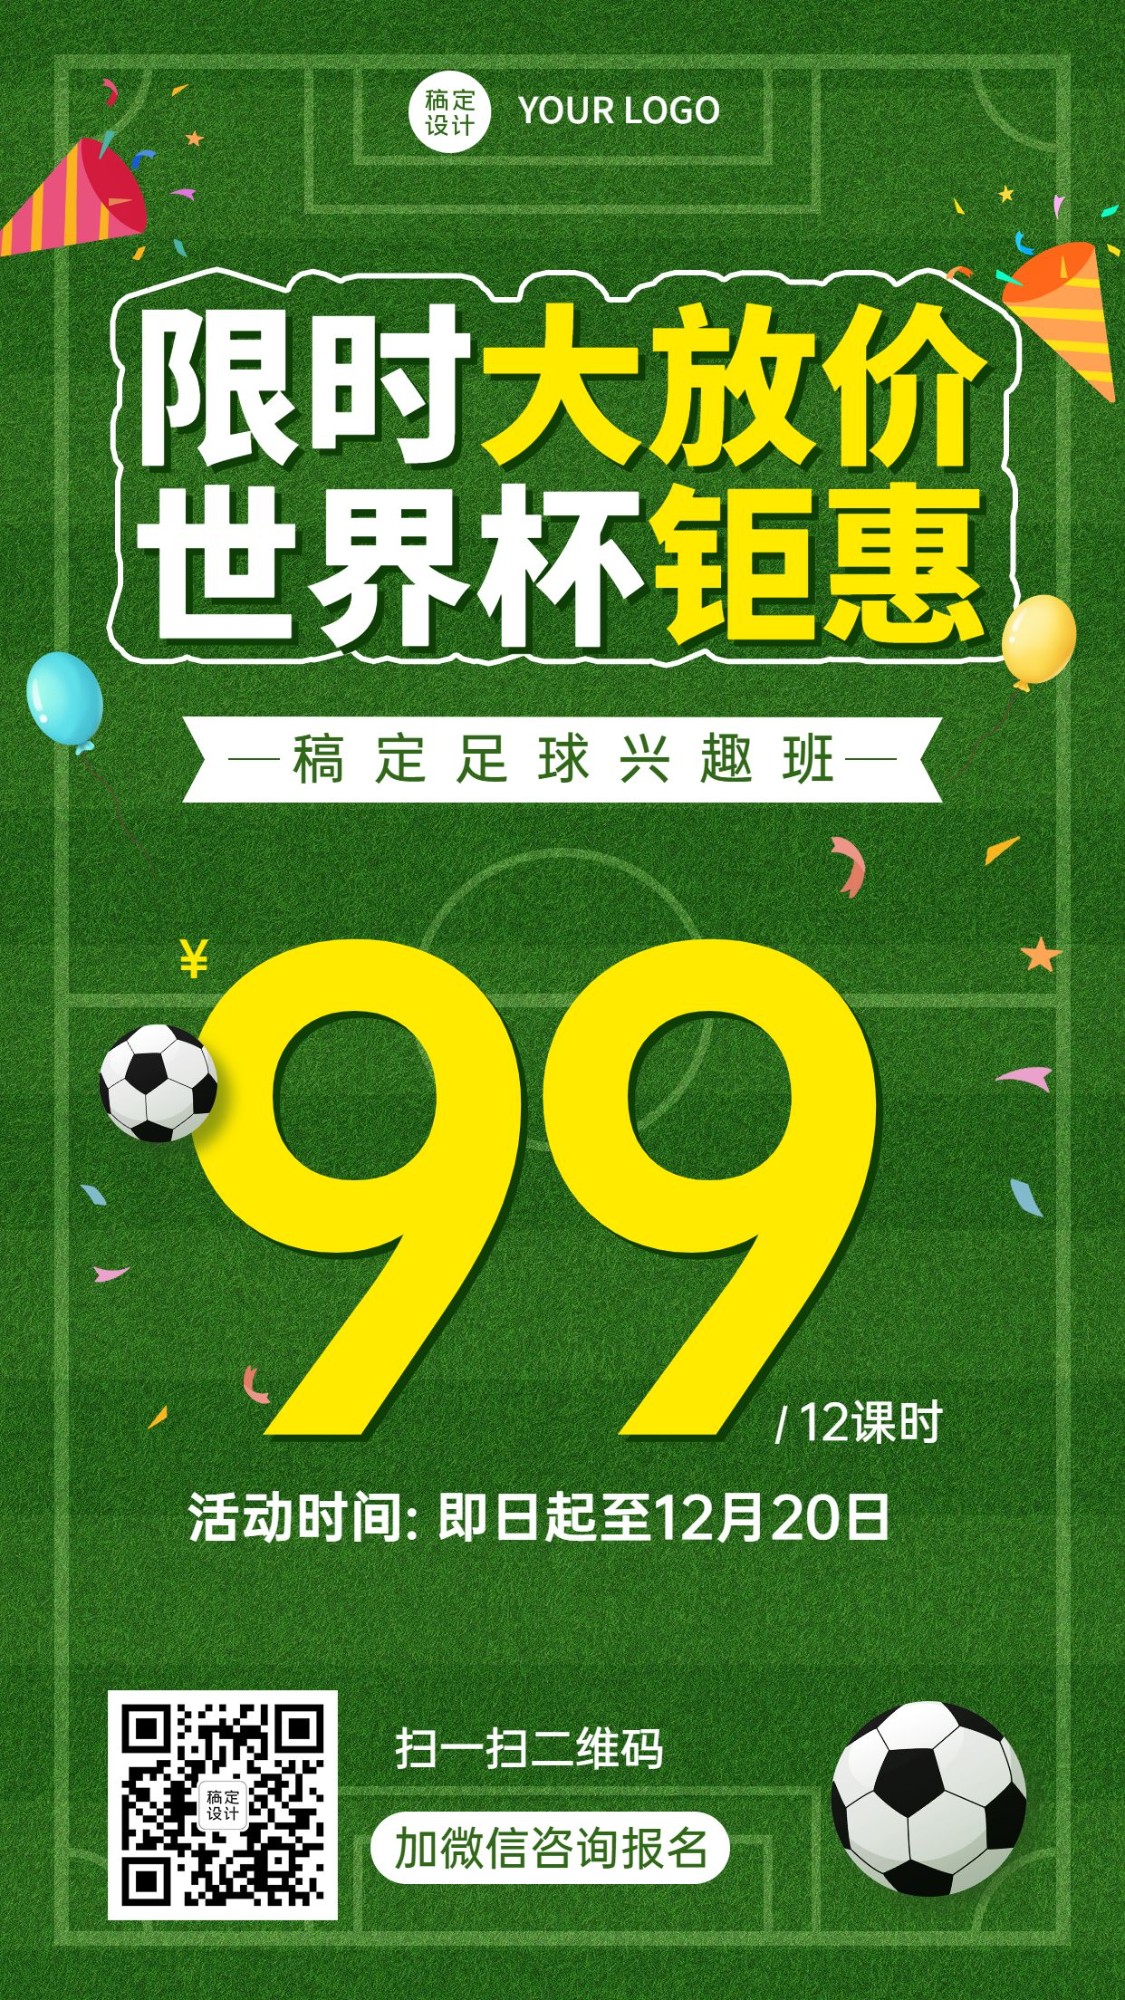 世界杯少儿足球班招生促销手机海报预览效果